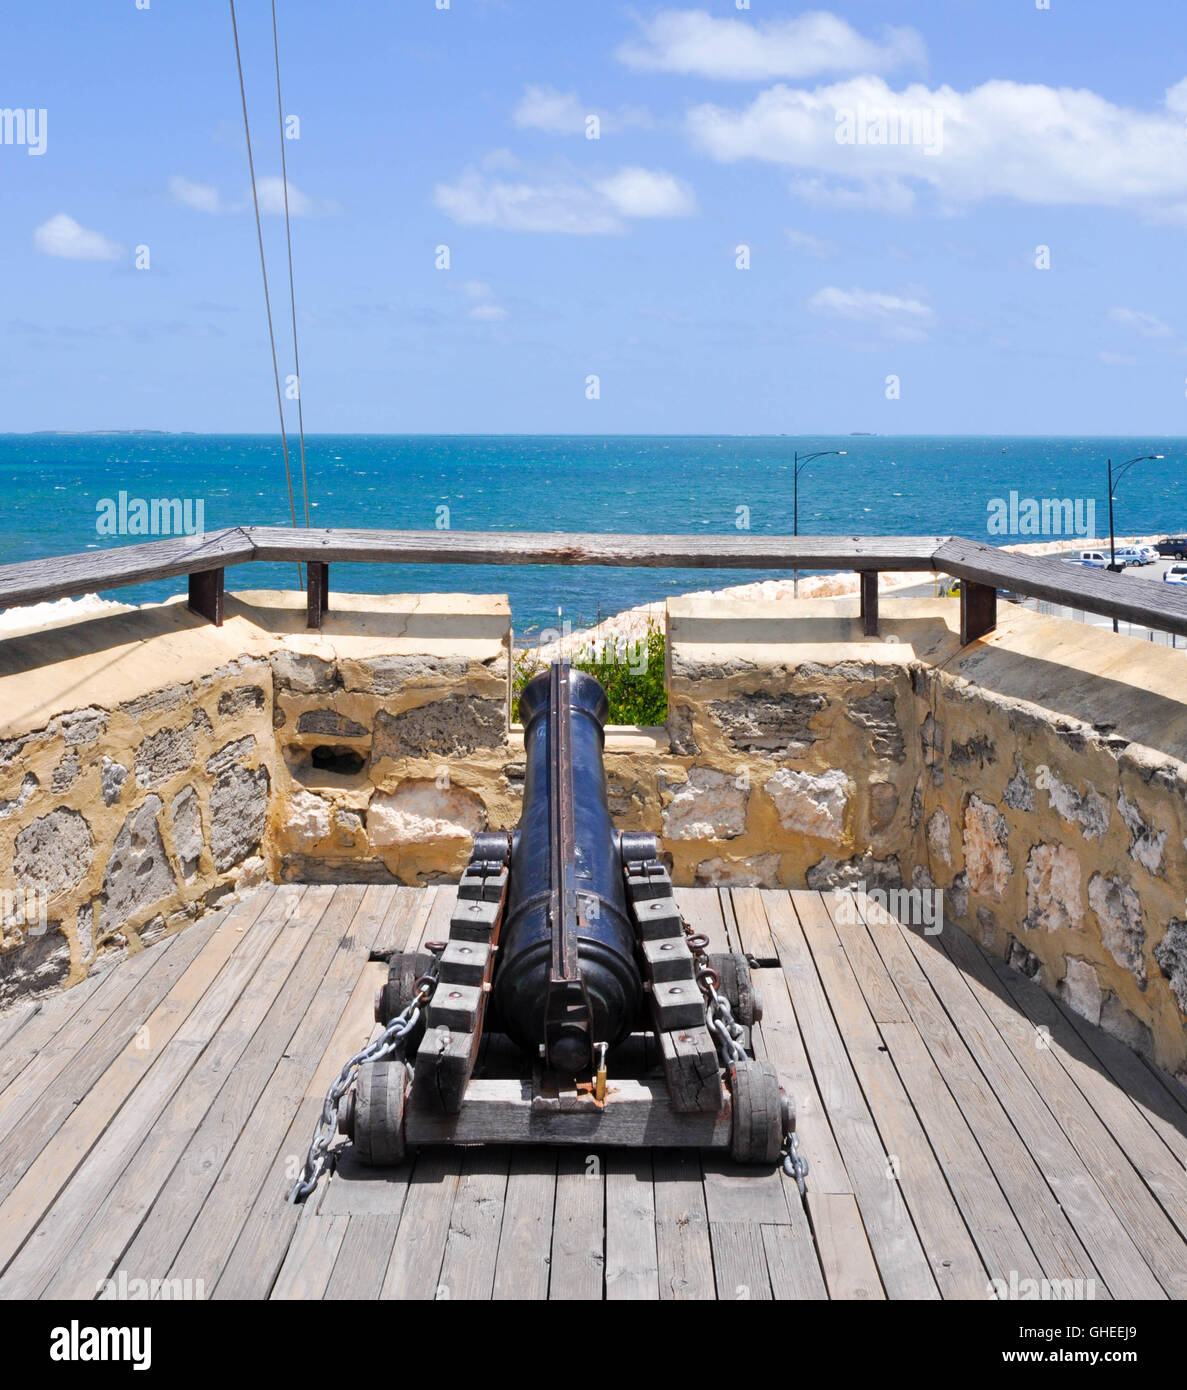 Vieux replica noir cannon sur le mont sur balcon terrasse à la maison ronde attraction touristique à Fremantle, Australie occidentale. Banque D'Images